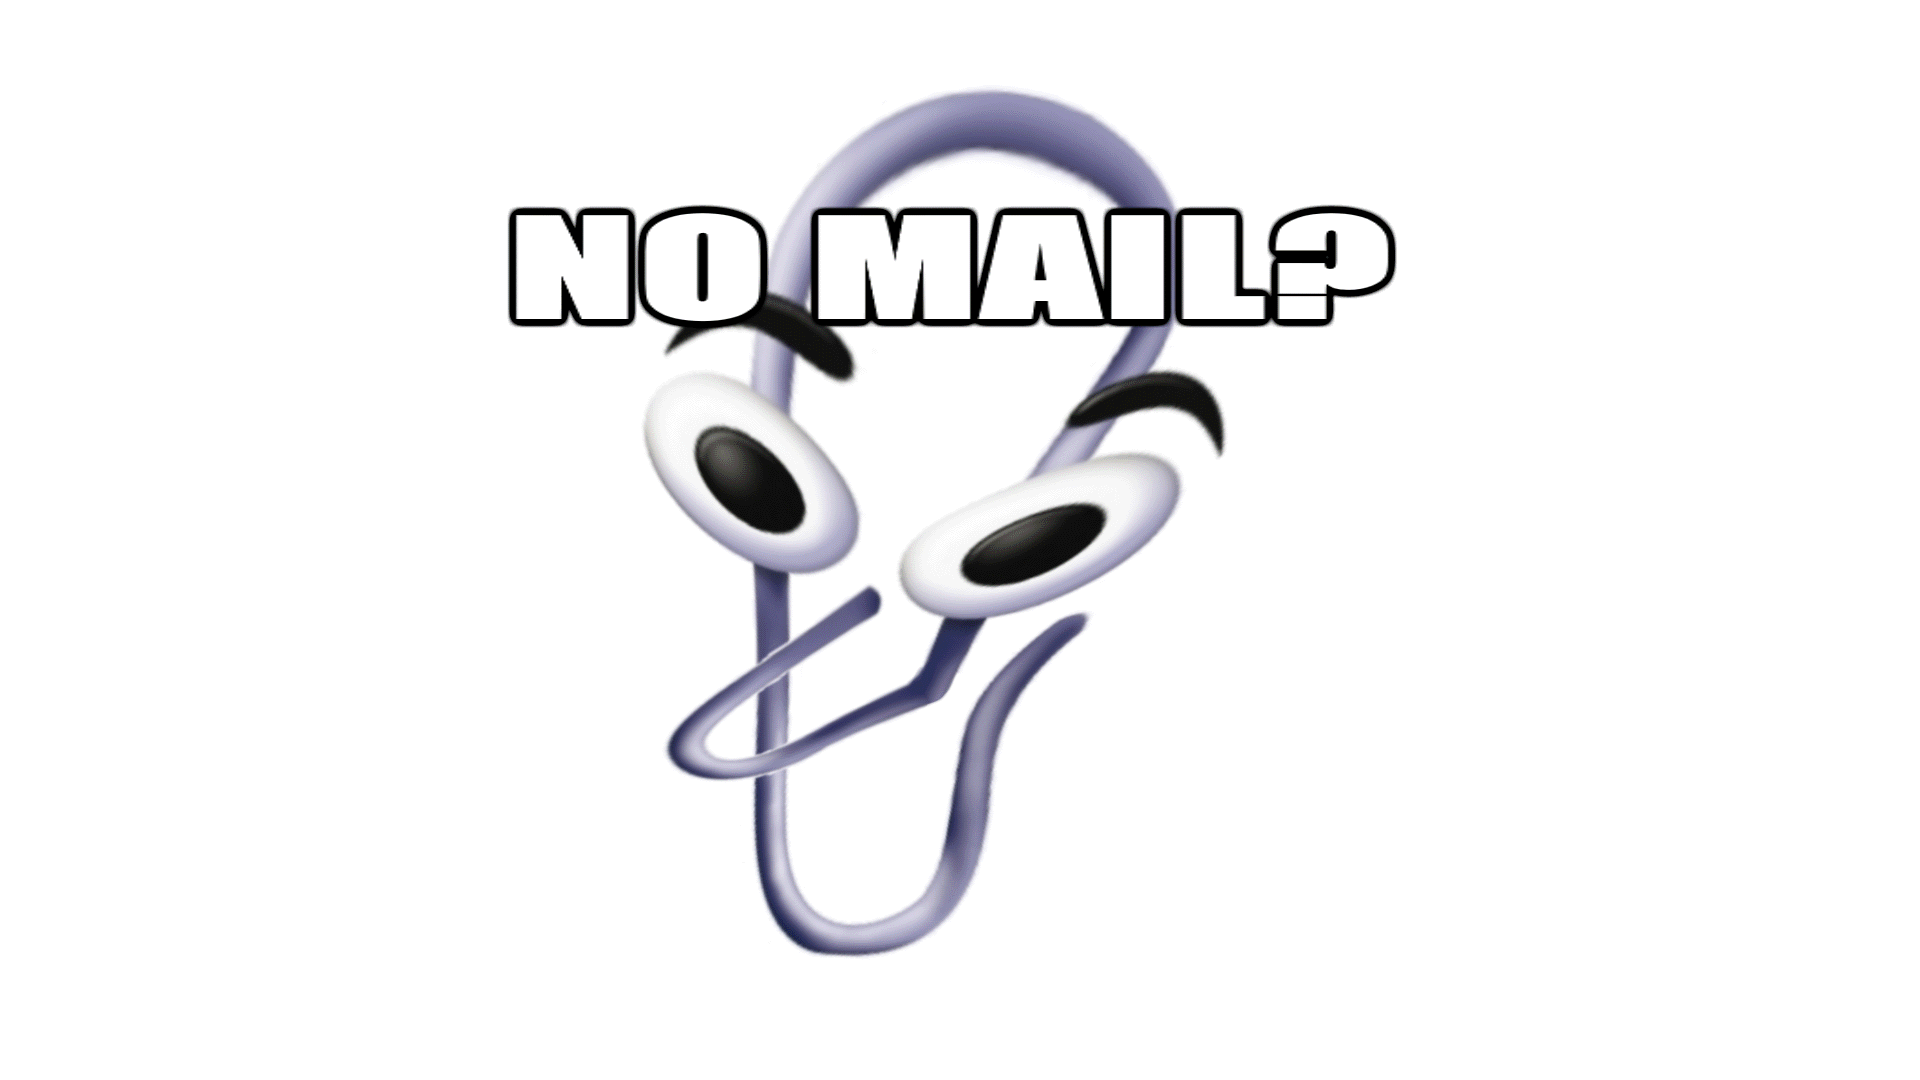 No mail? [OC]